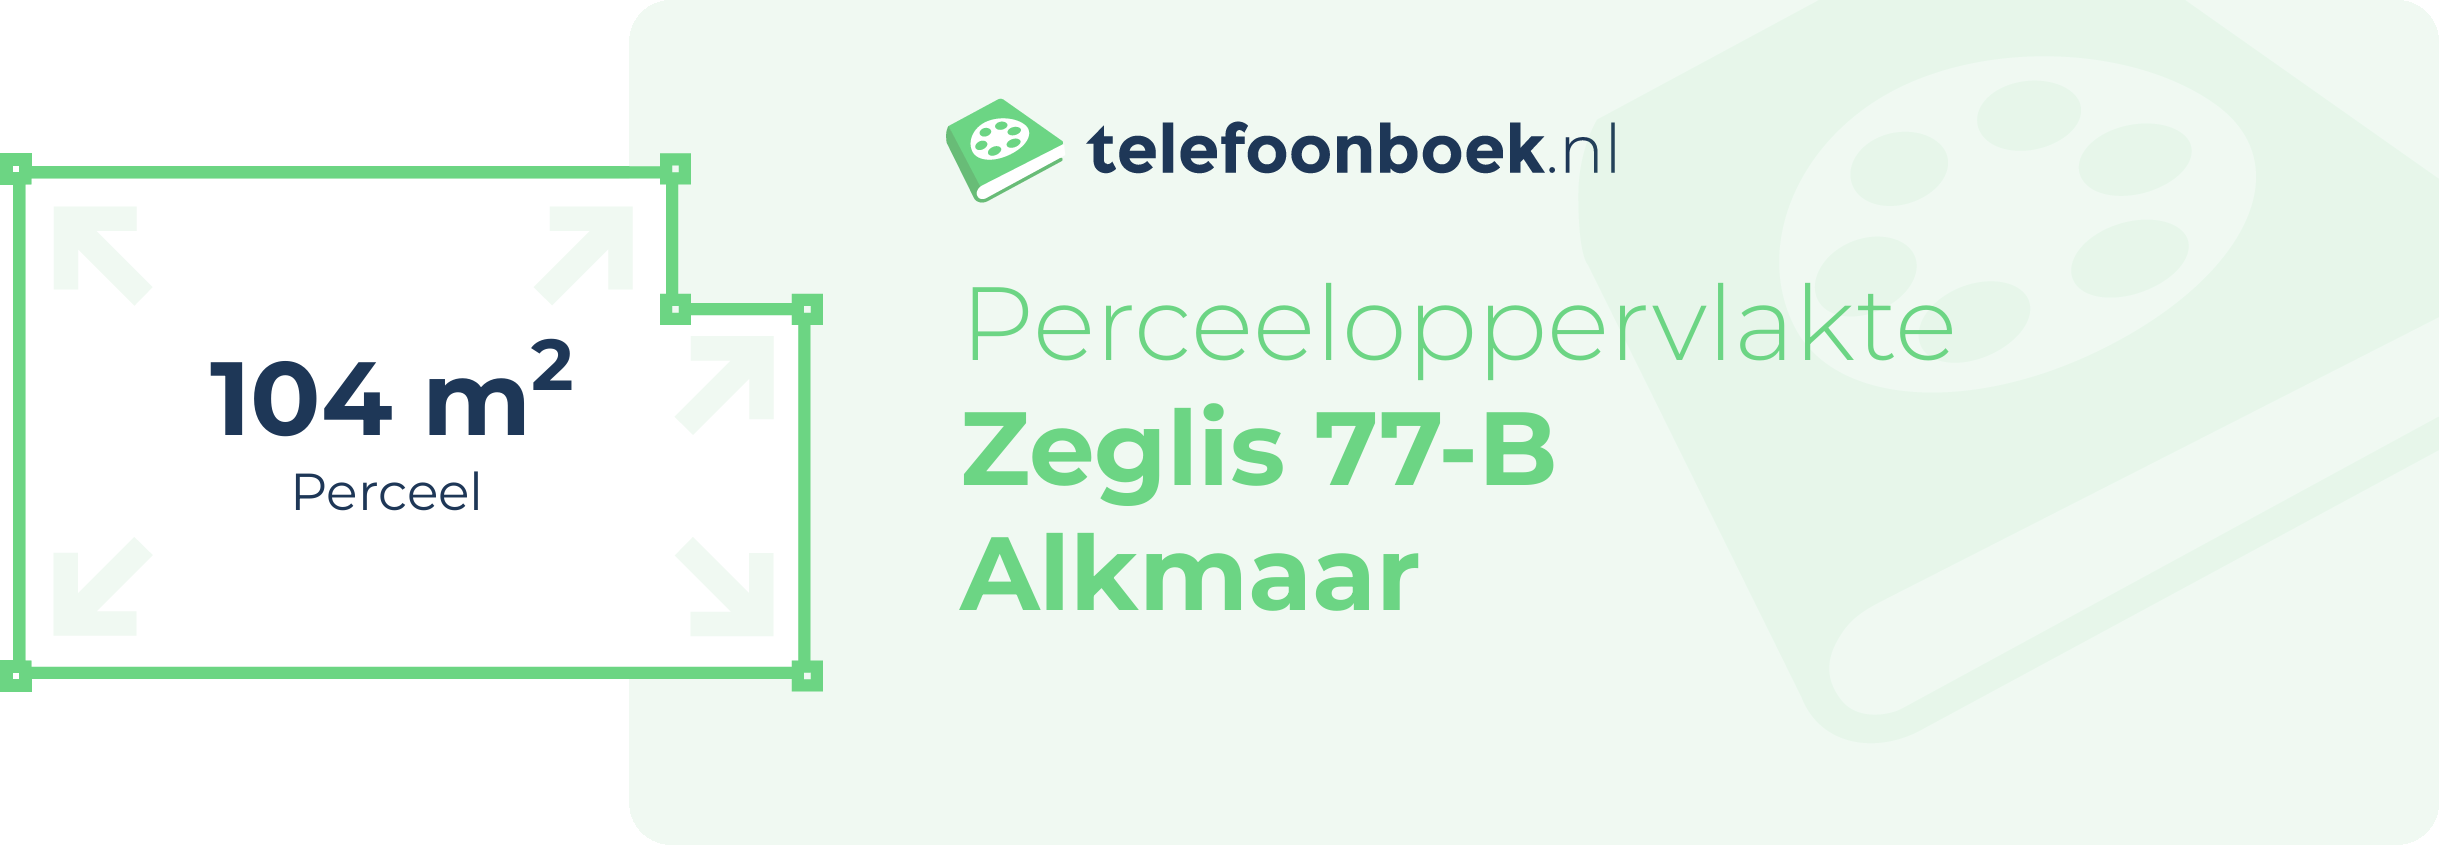 Perceeloppervlakte Zeglis 77-B Alkmaar